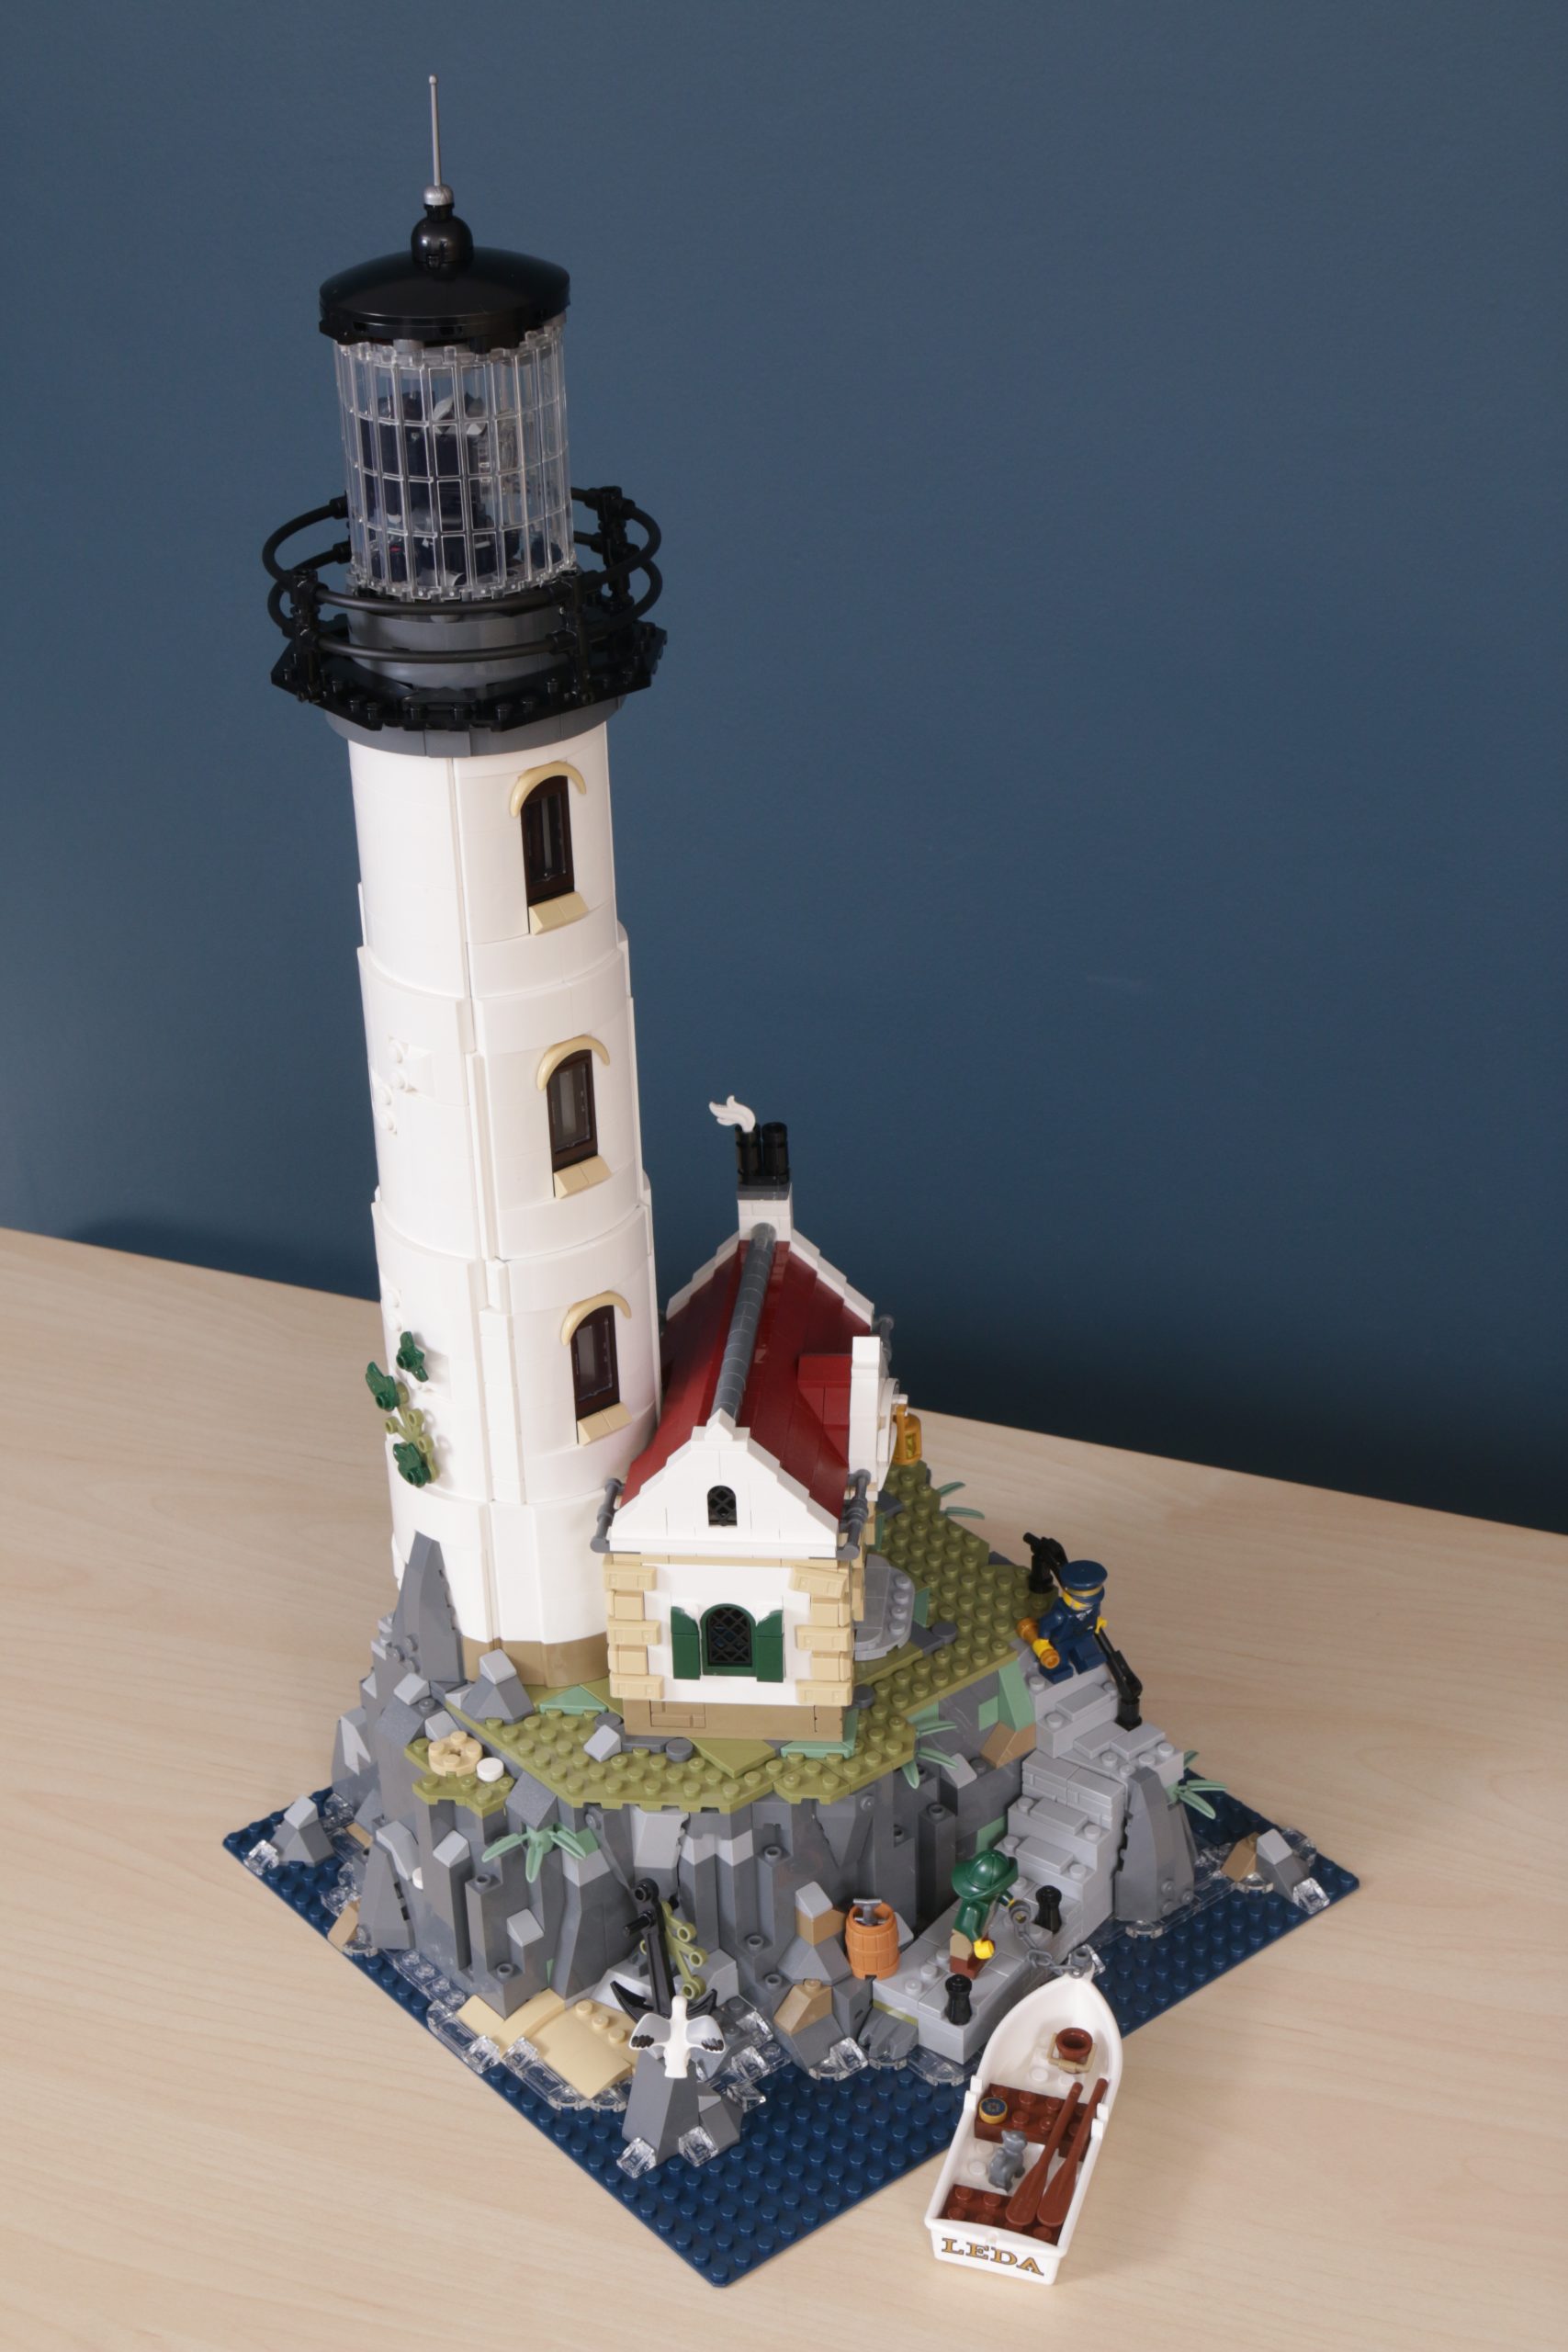 Lego Motorized Lighthouse Review: avantages et inconvénients – Lightailing